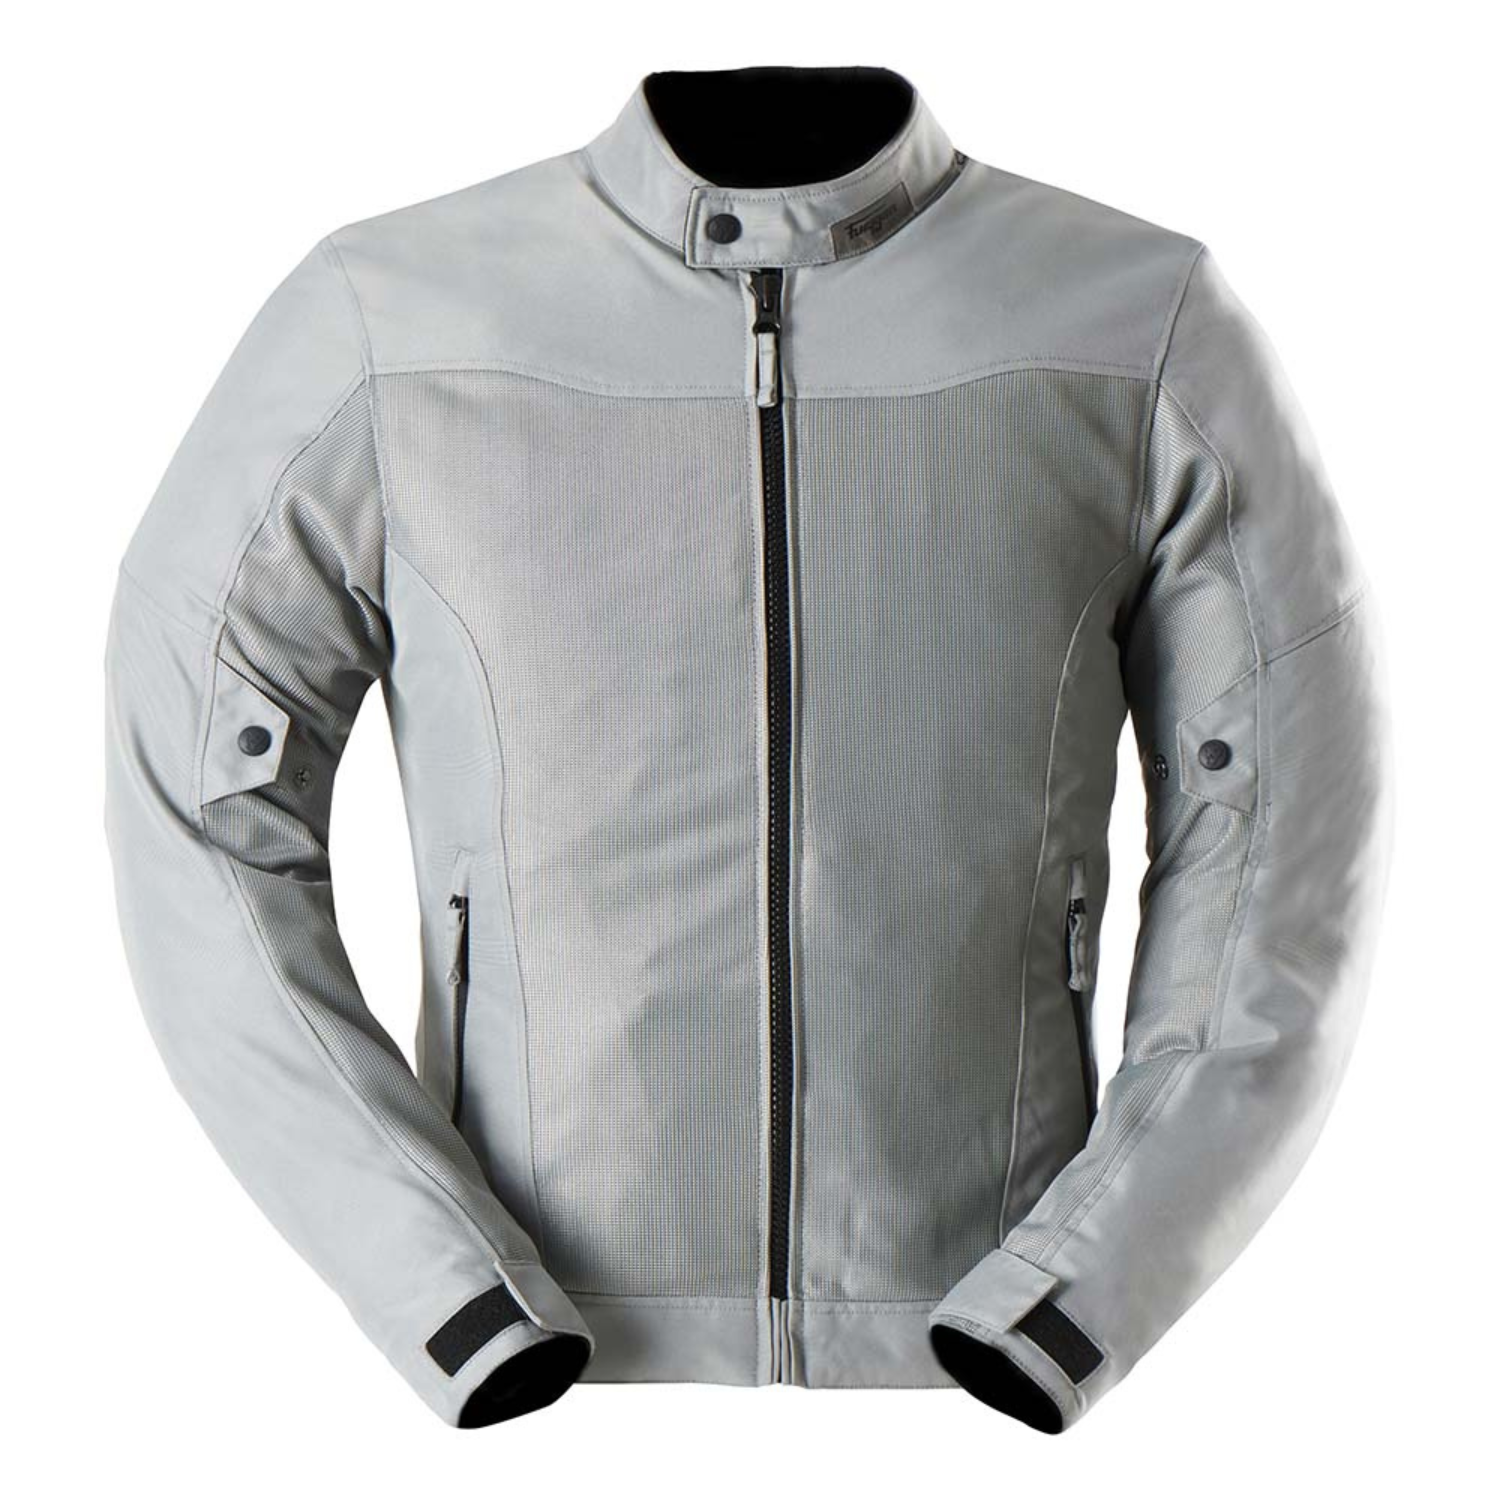 Image of Furygan Mistral Evo 3 Jacket Grey Size S ID 3435980362652